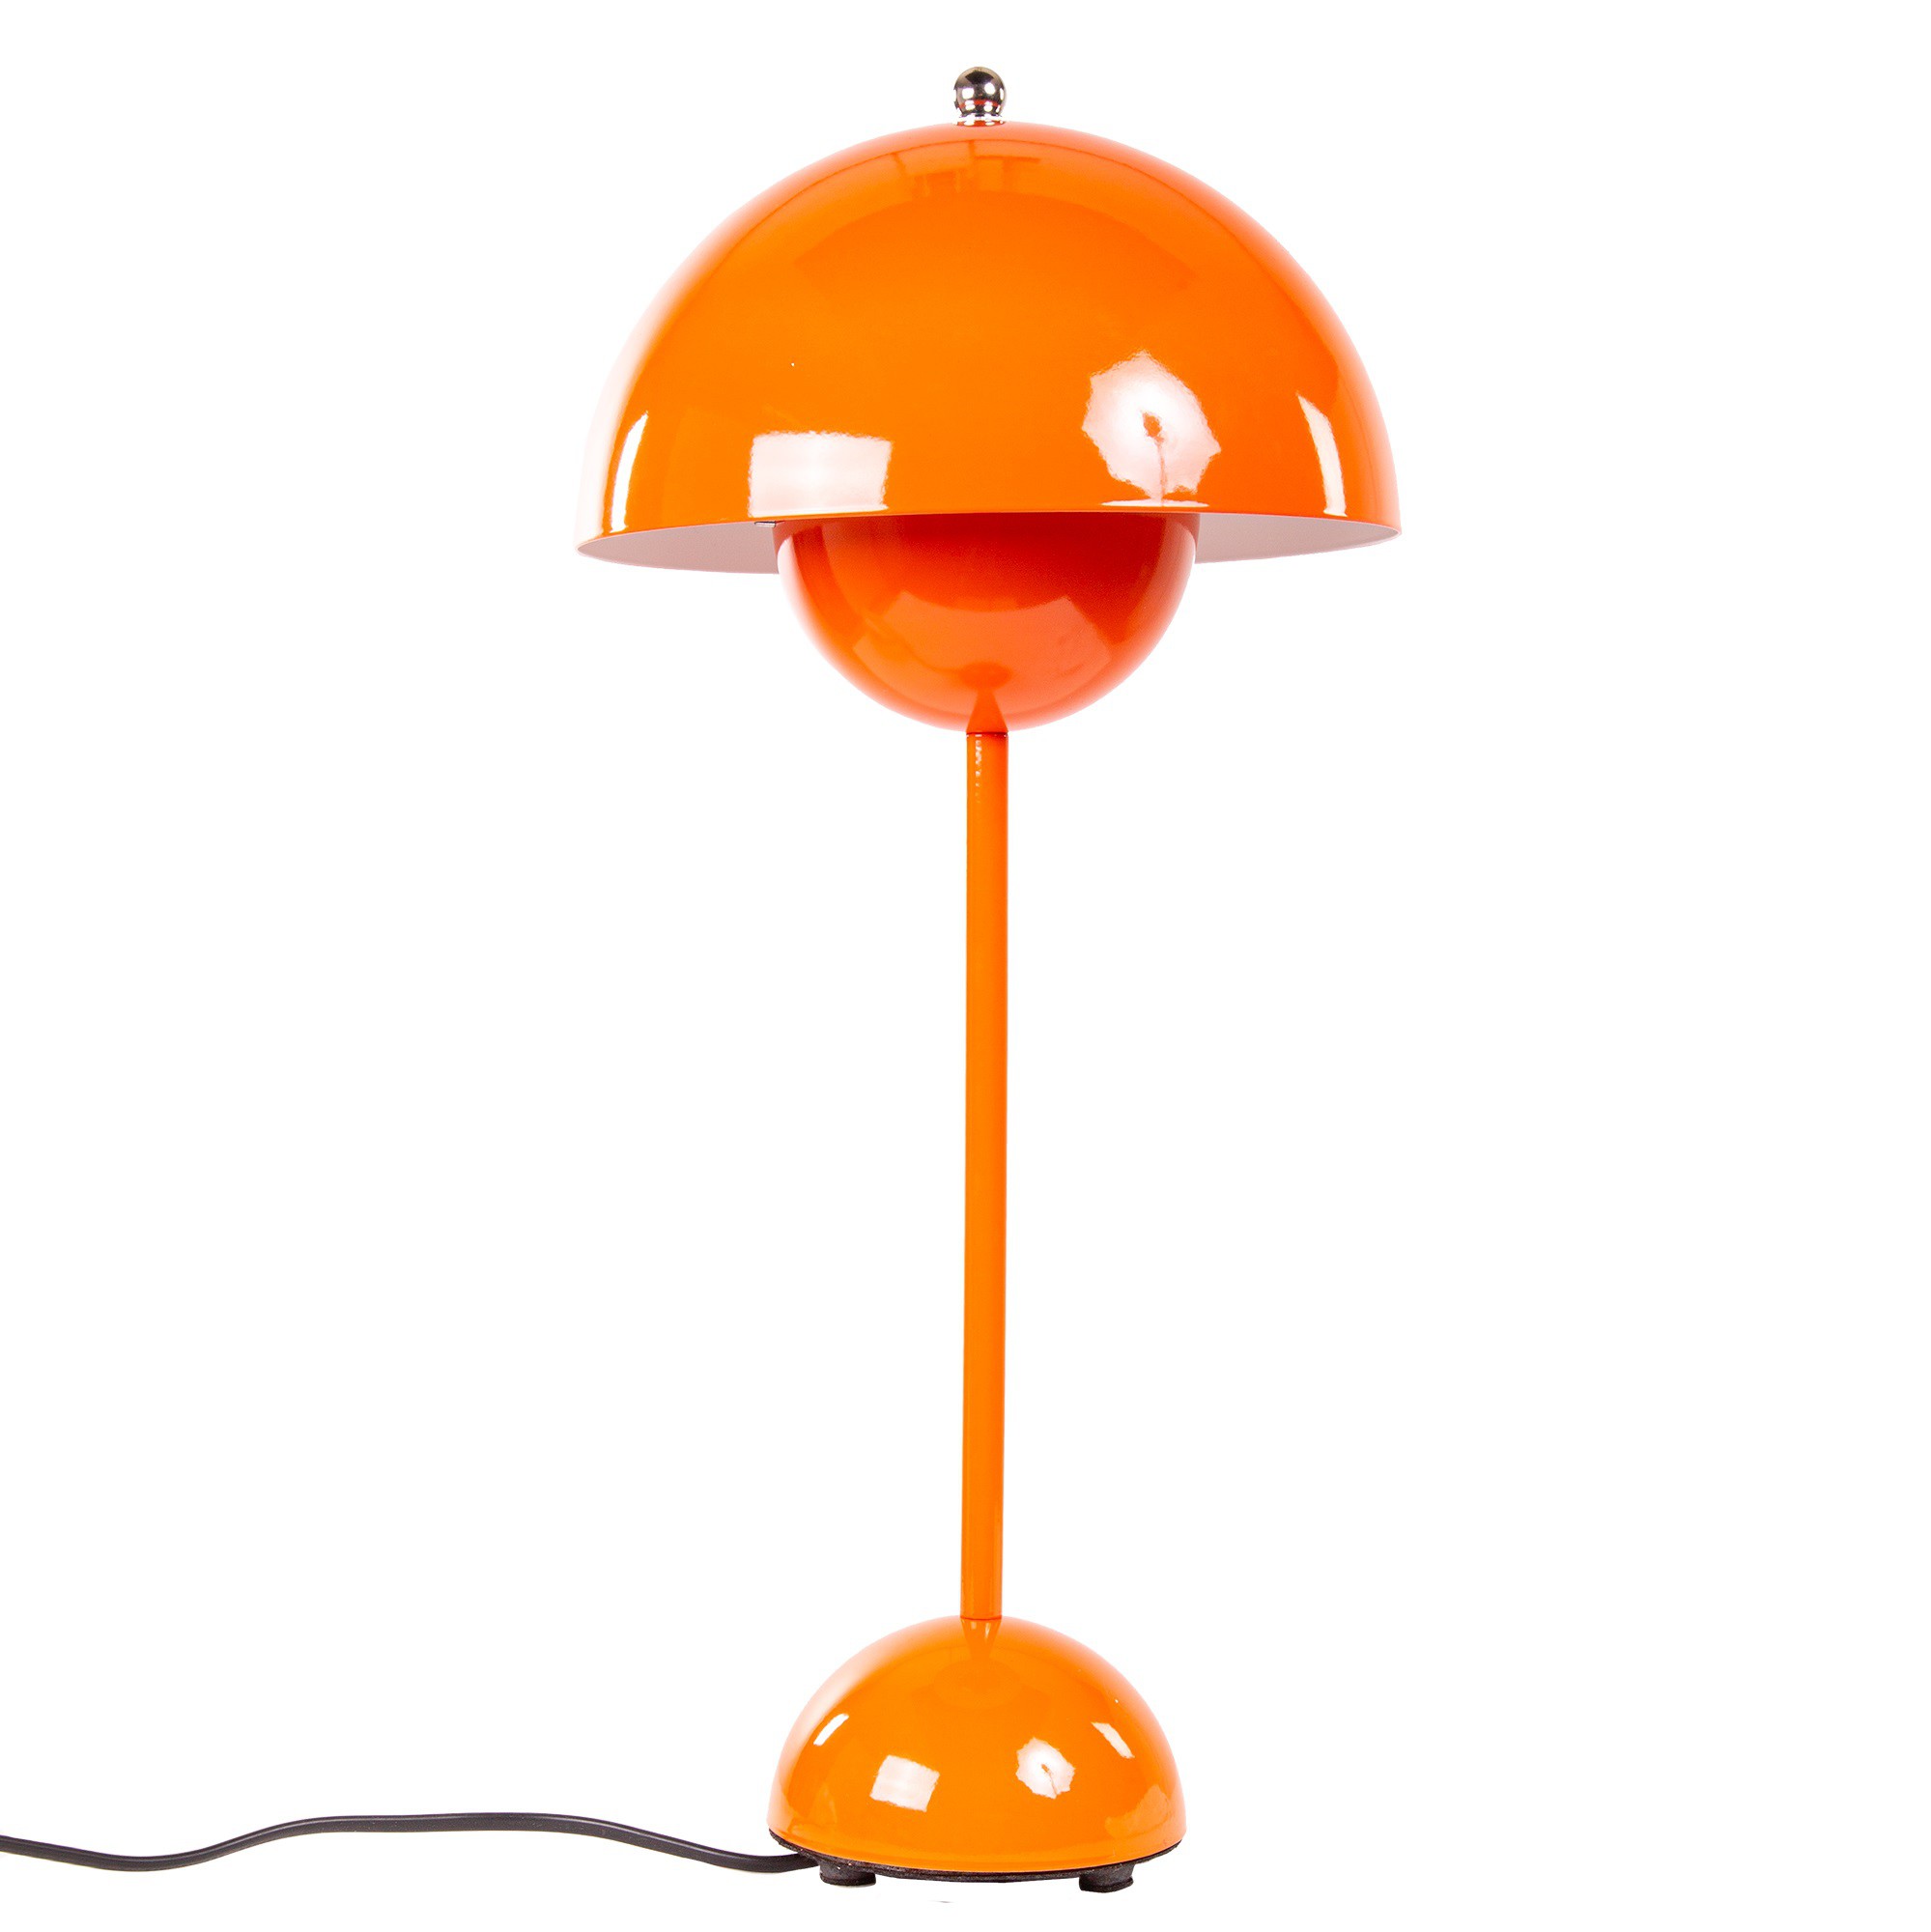 https://cdn.dominidesign.com/shop2/media/catalog/product/cache/all/image/9df78eab33525d08d6e5fb8d27136e95/f/l/flower-pot-table-lamp_orange.jpg